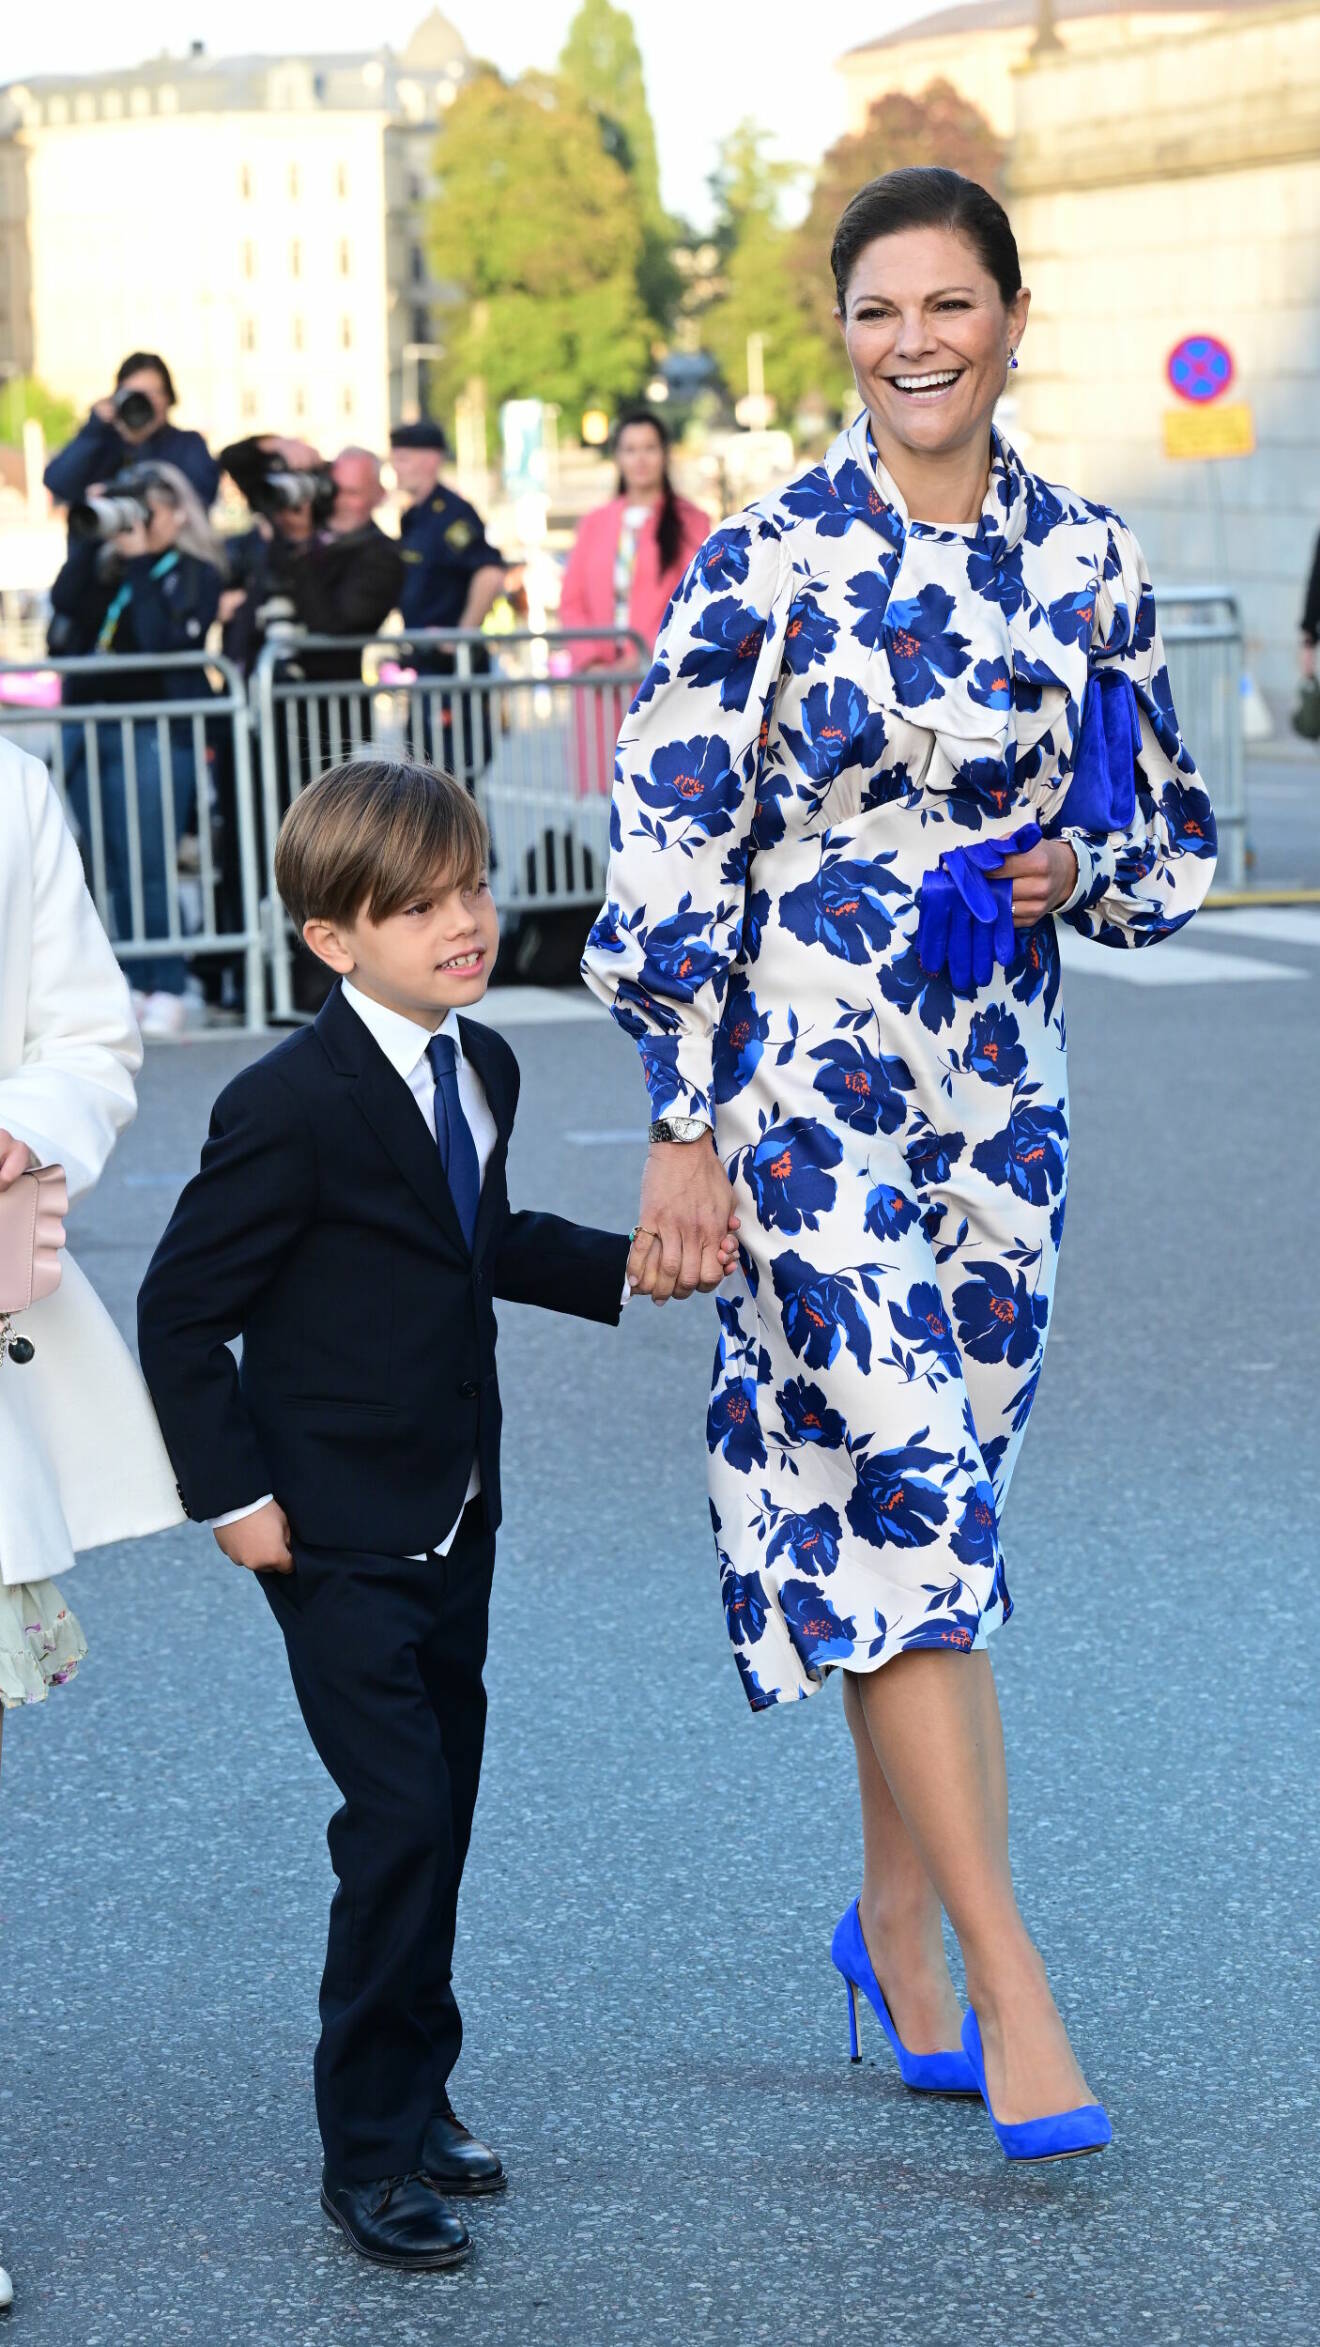 Prins Oscar och kronprinsessan Victoria vid firandet när Stockholm stad arrangerar en jubileumskonsert på Norrbro under lördagen i samband med kung Carl XVI Gustafs 50-årsjubileum på tronen.